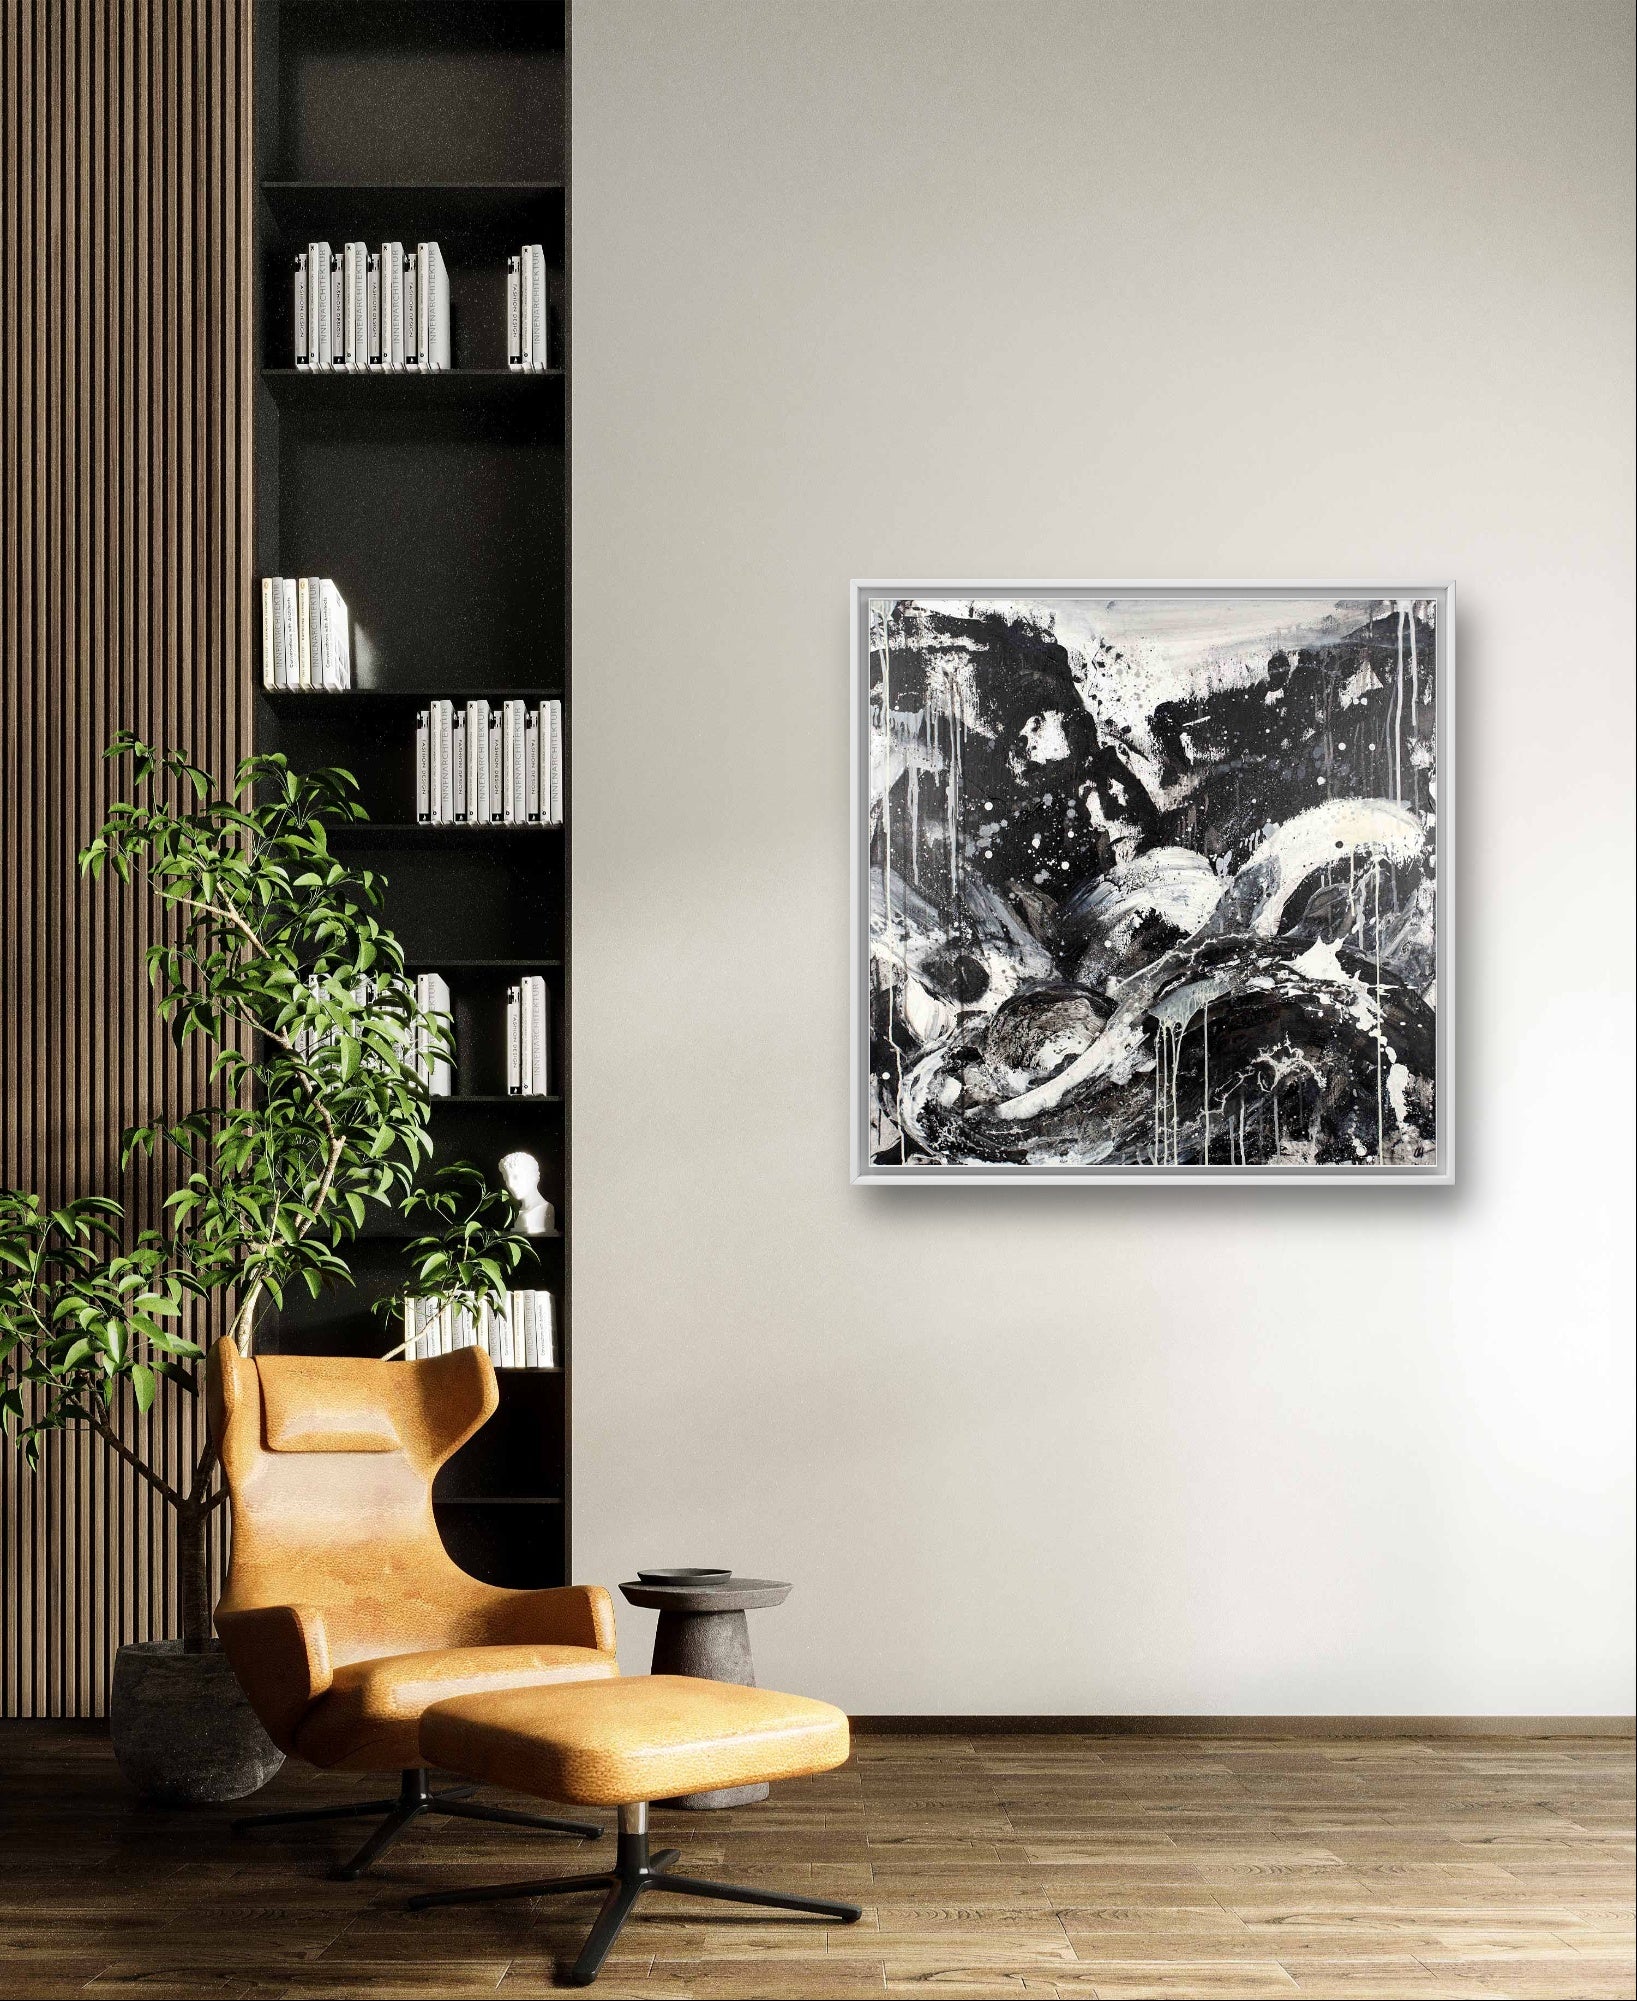 schwarzweiß Bild 100 x 100 cm Schwung des Lebens,abstrakte große Leinwandbilder abstrakte Bilder kaufen ,